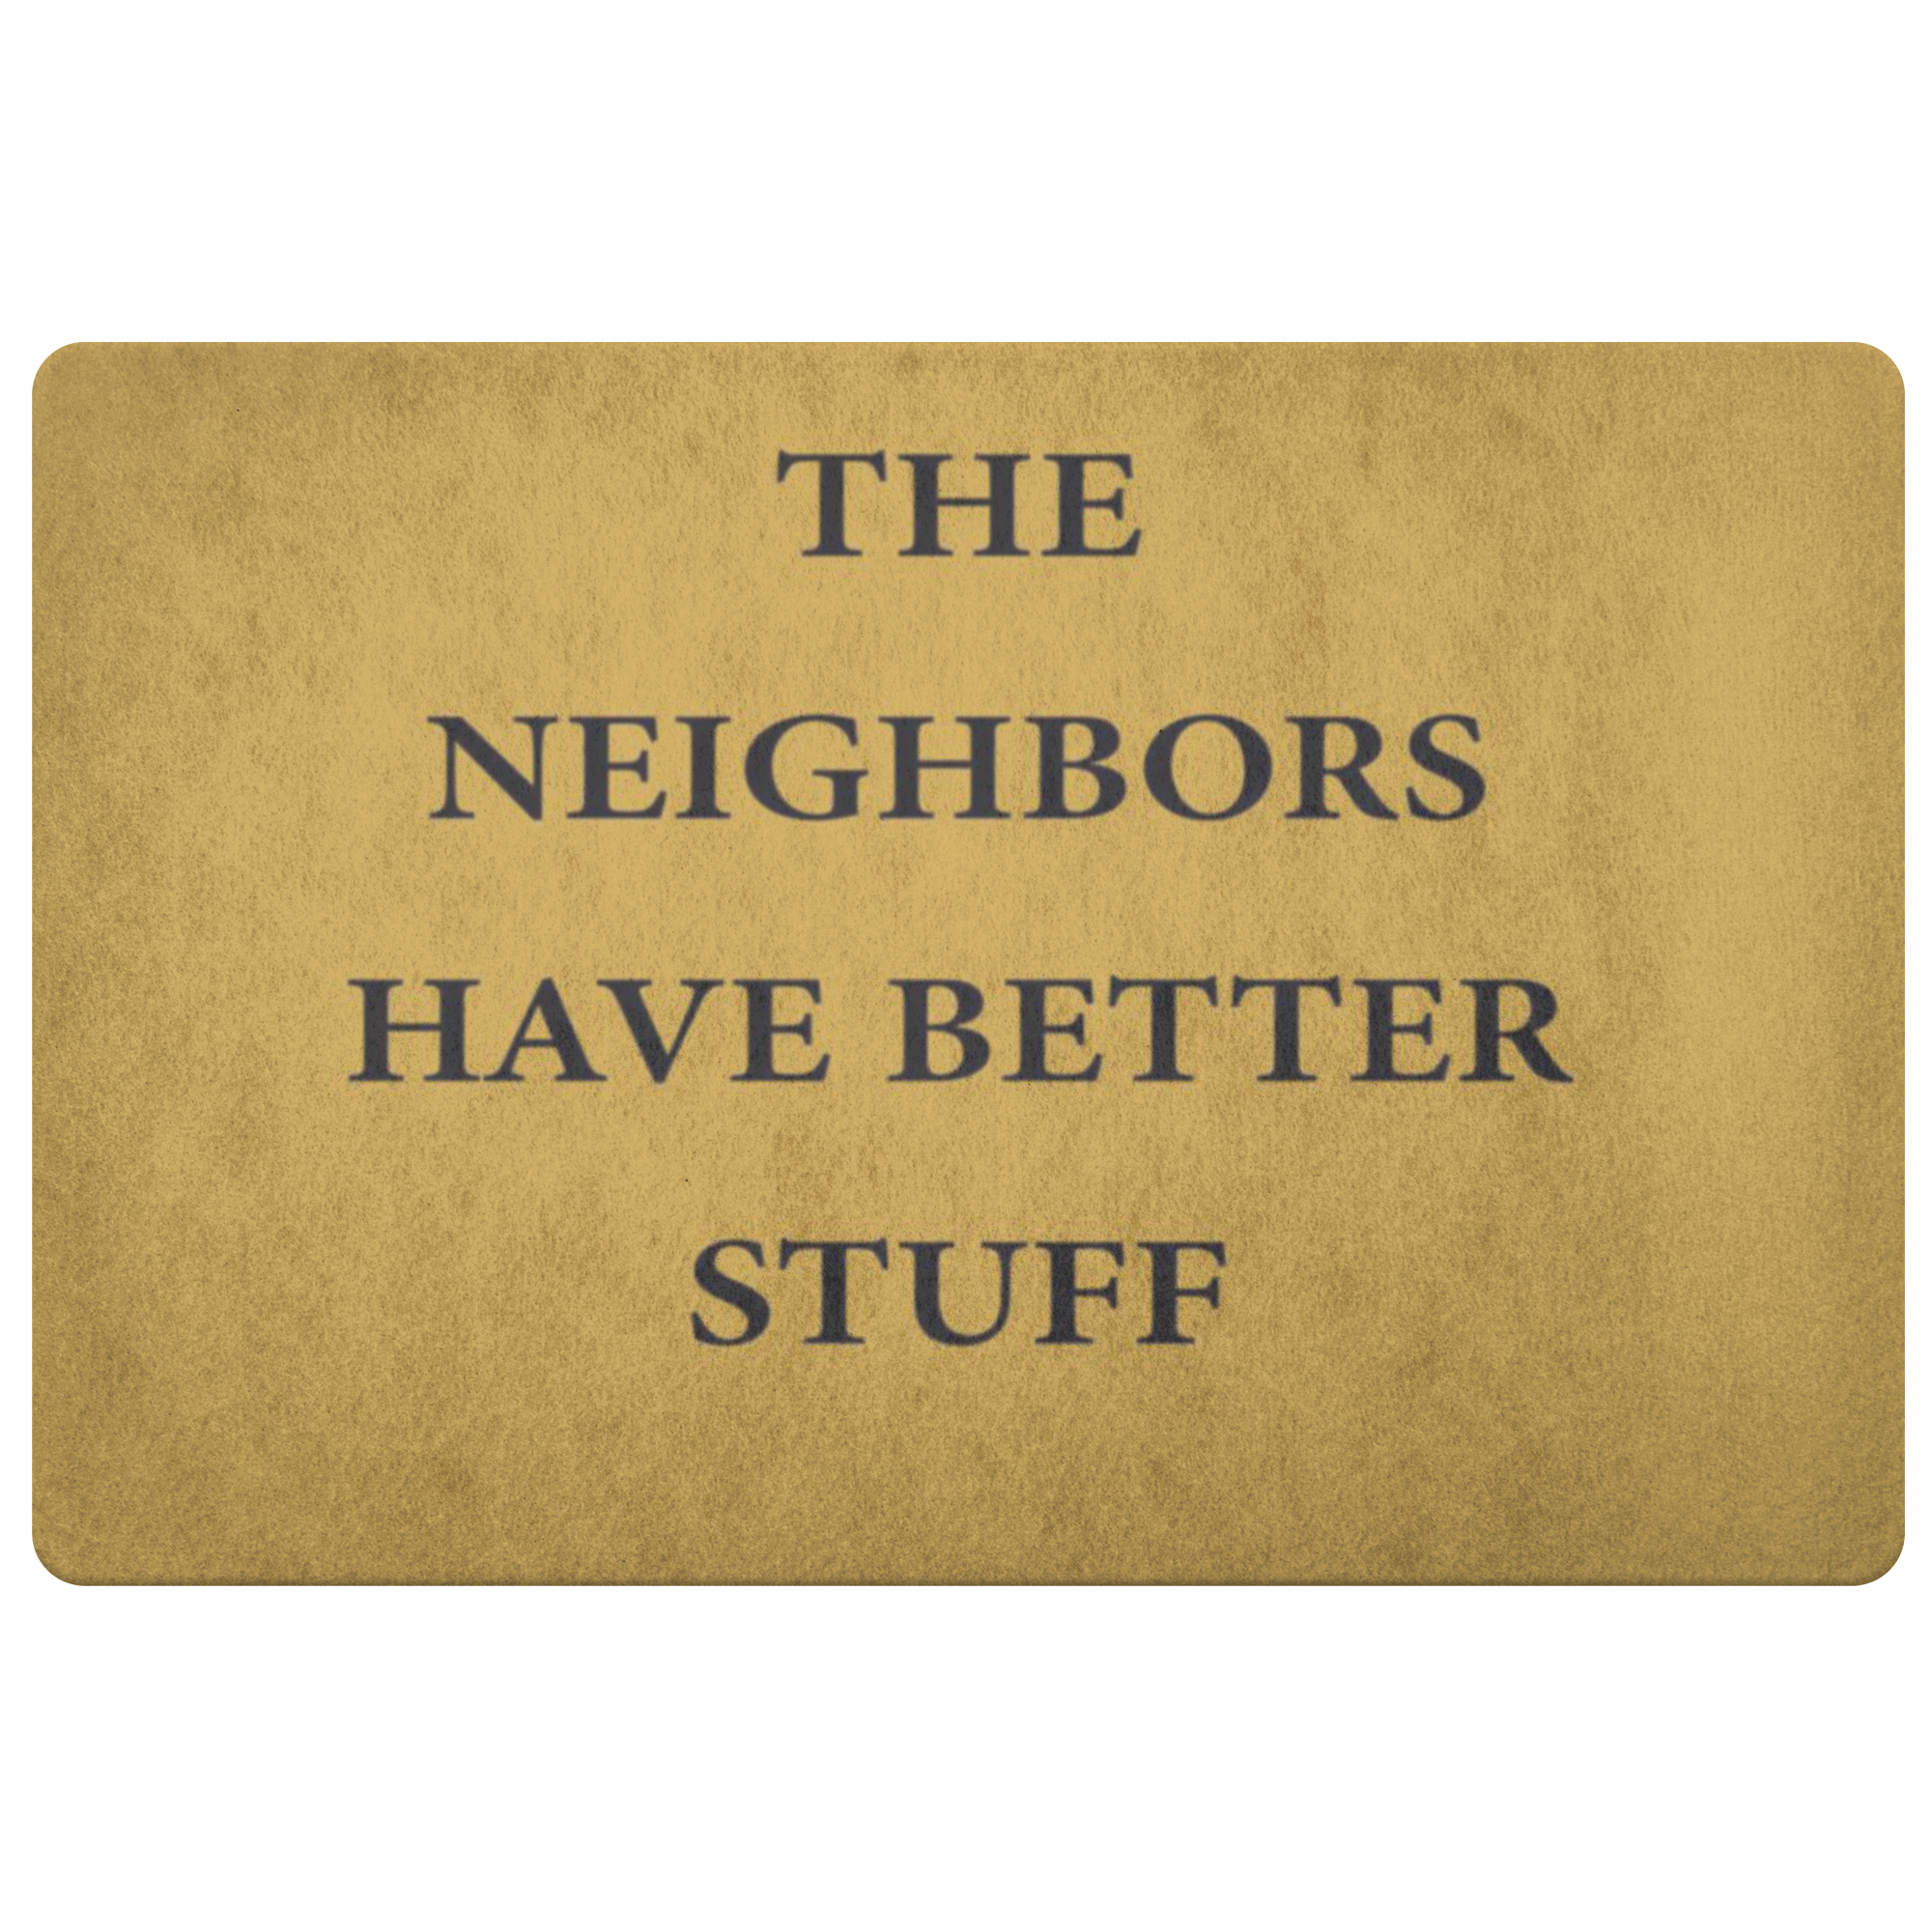 The Neighbors Have Better Stuff Doormat